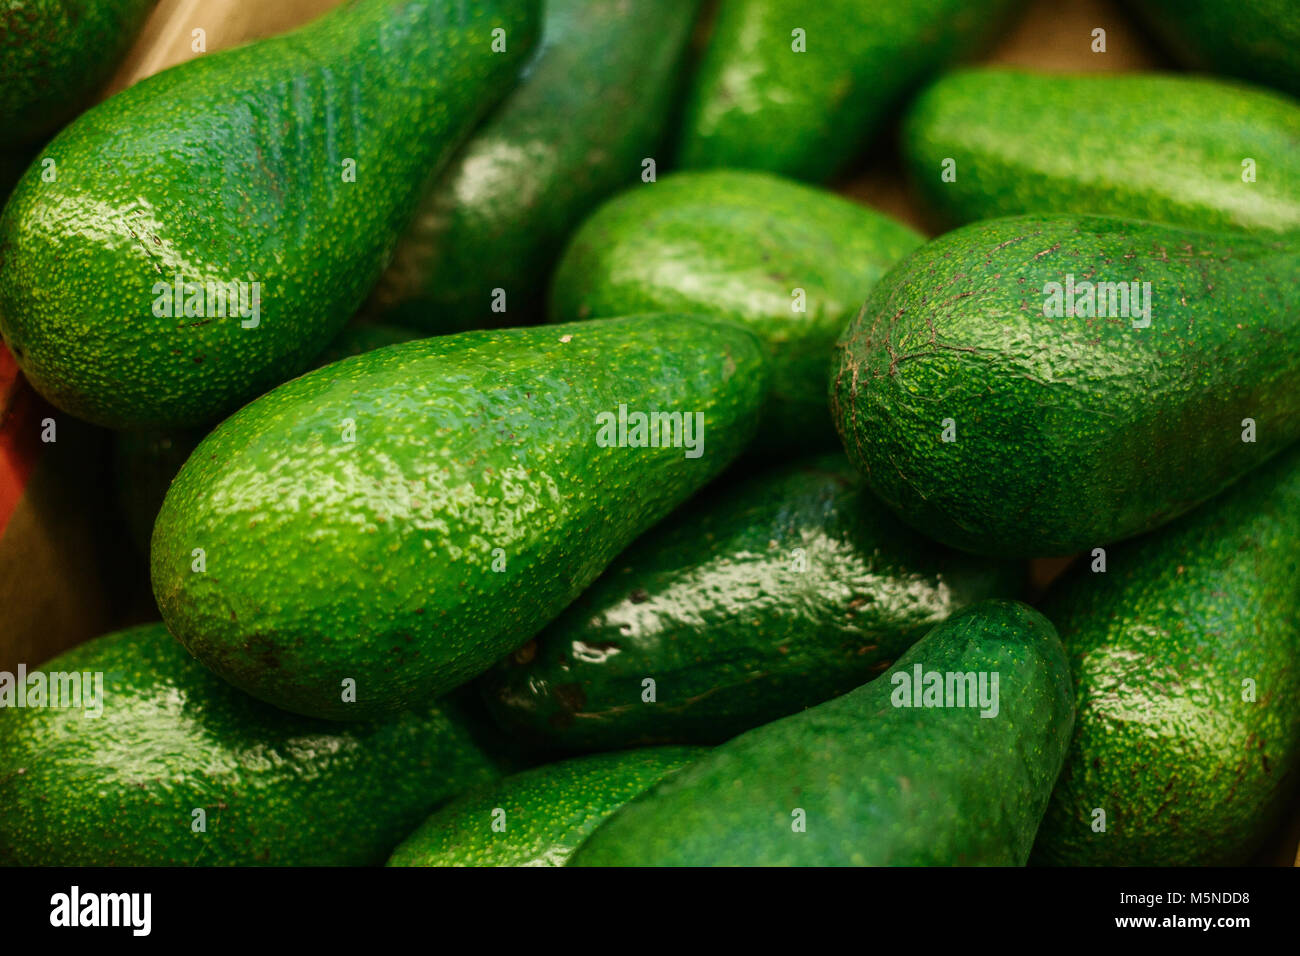 Delicioso fresco verde aguacate. Alimentos saludables y nutritivas. Foto de stock